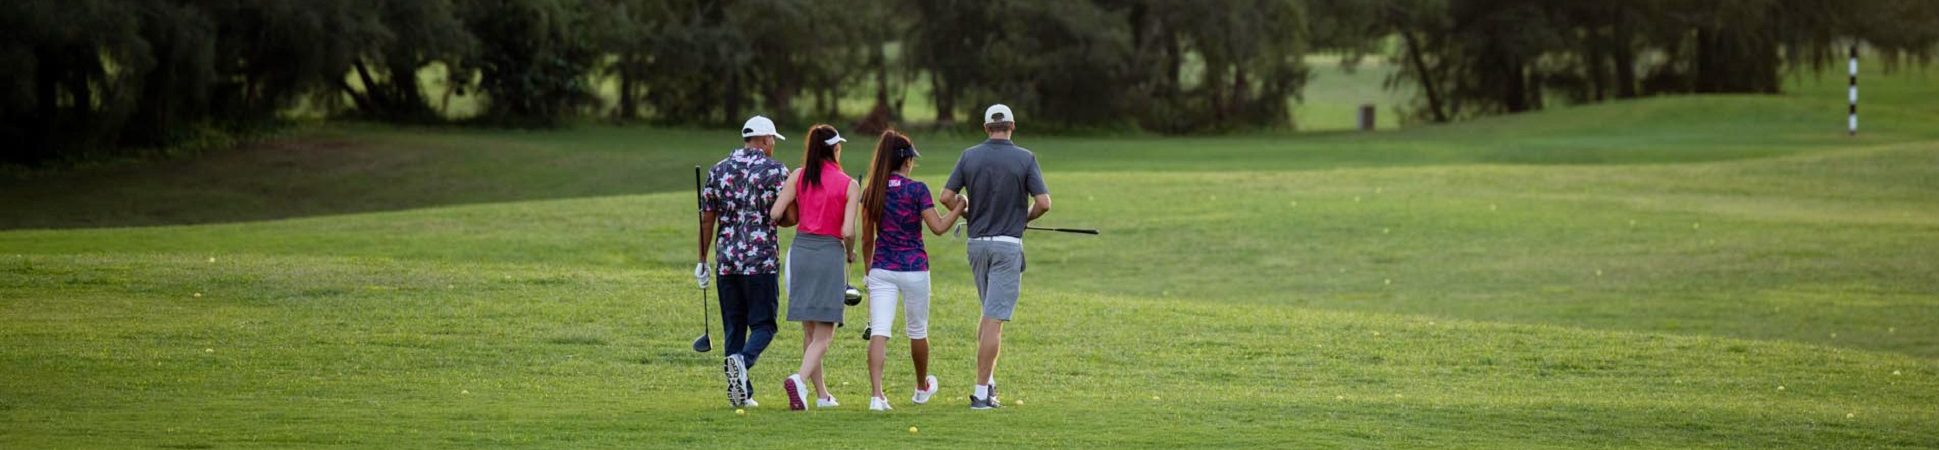 golfers walking on course